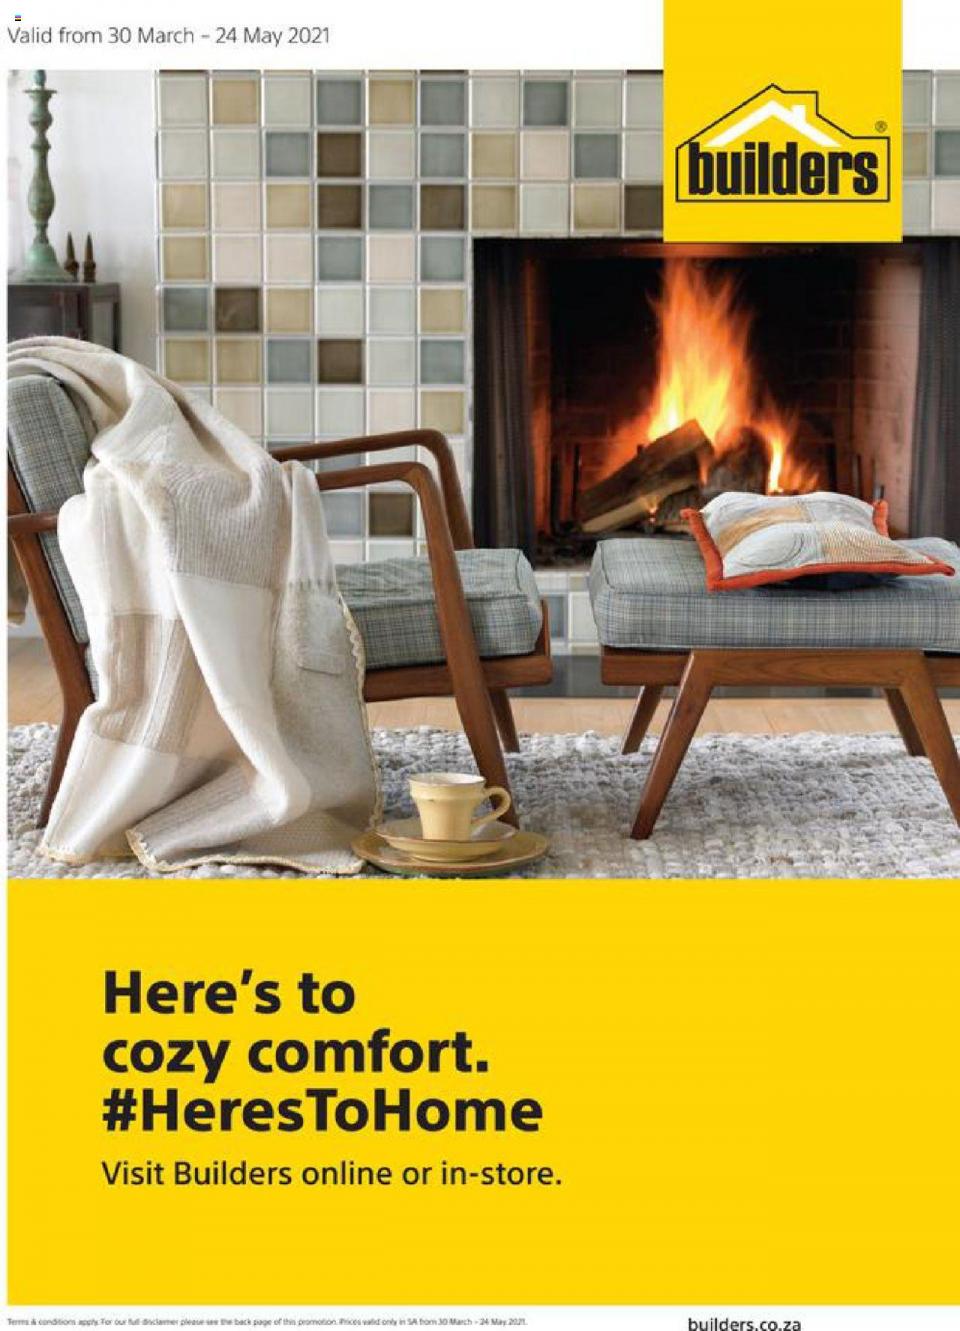 Builders Warehouse Specials Cozy Comfort 11 – 24 May 2021